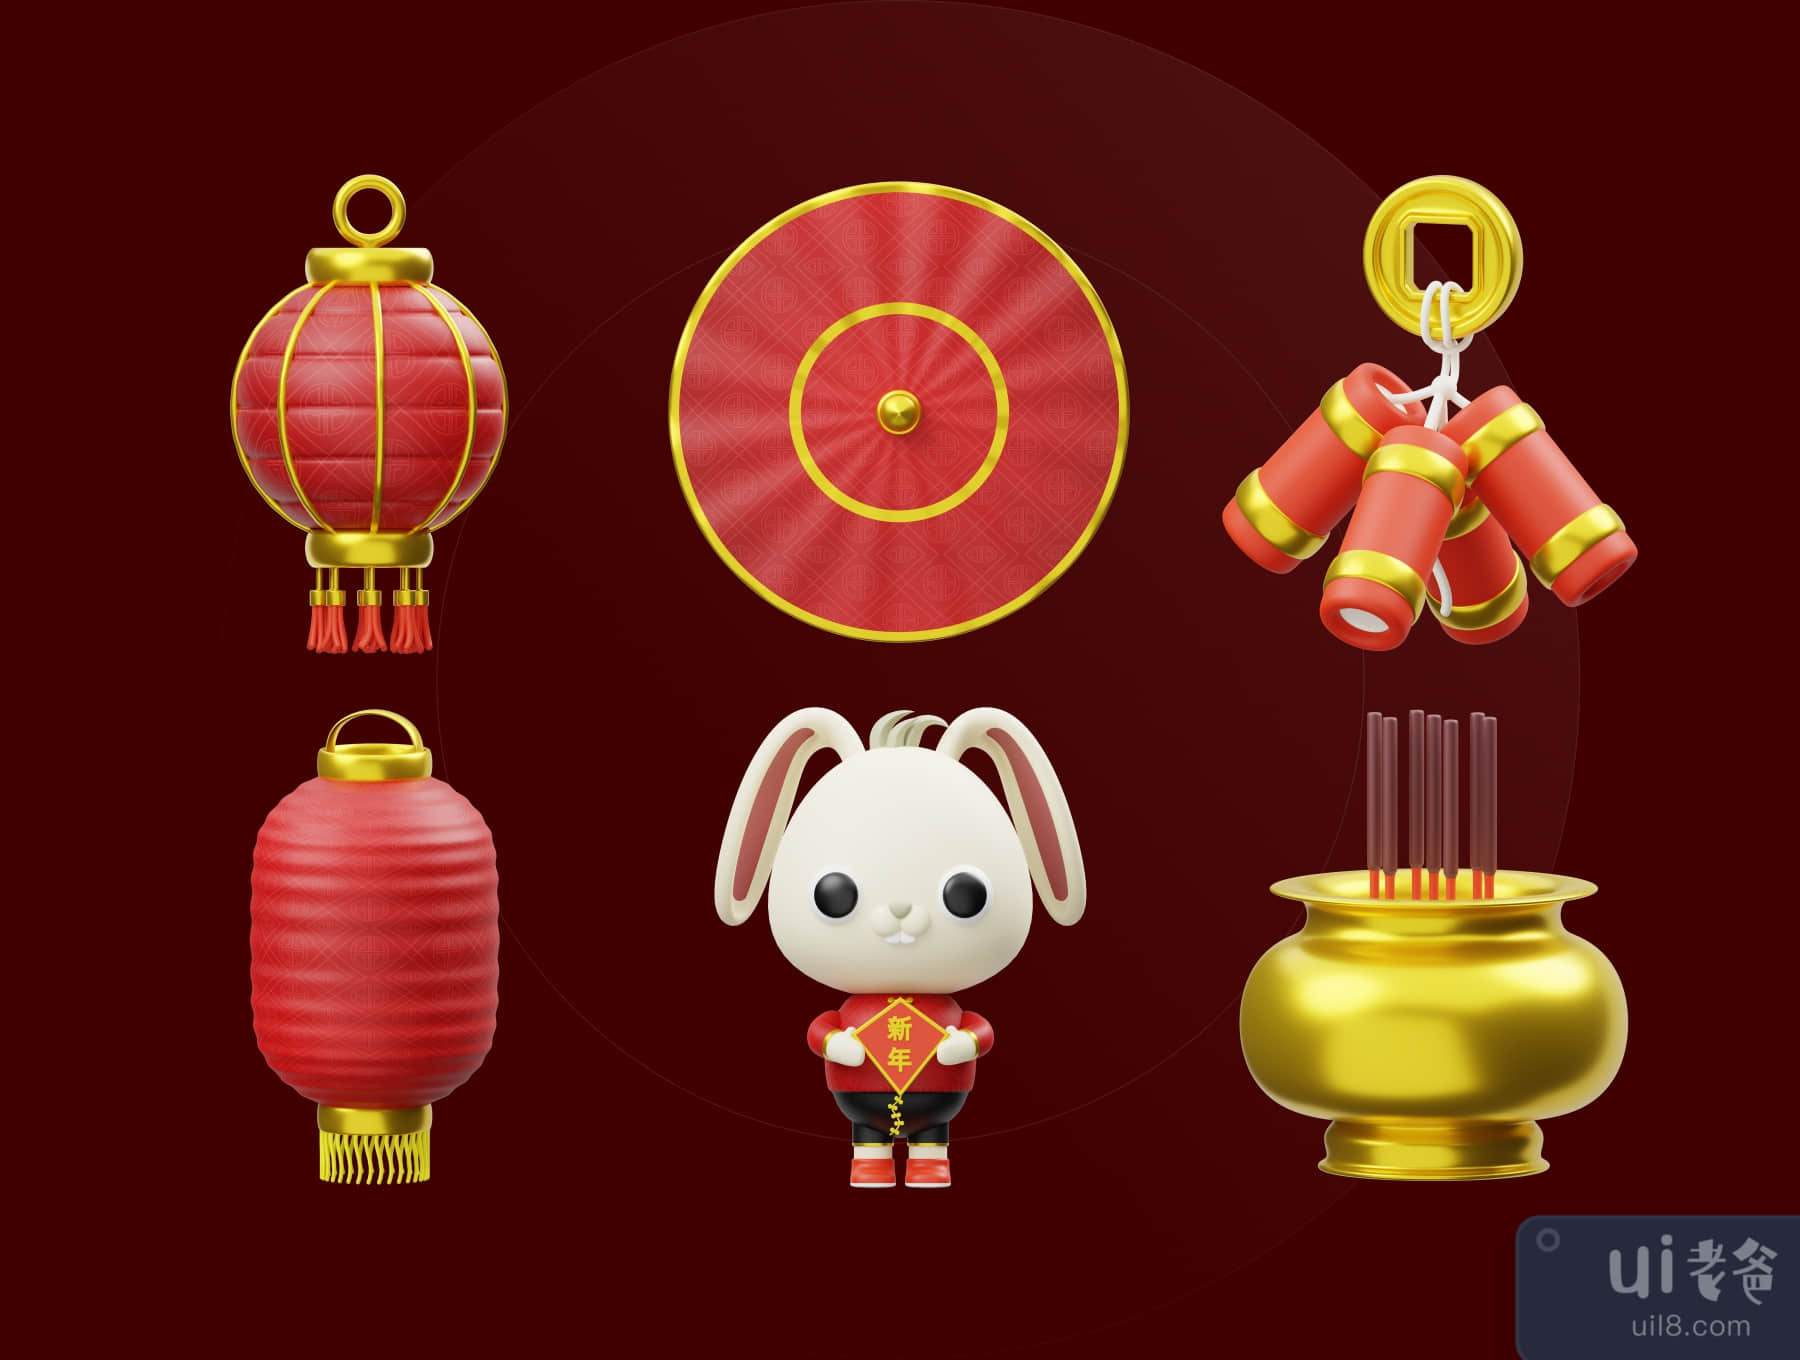 中国新年的3D插图 (Chinese New Year 3D Illustration)插图4